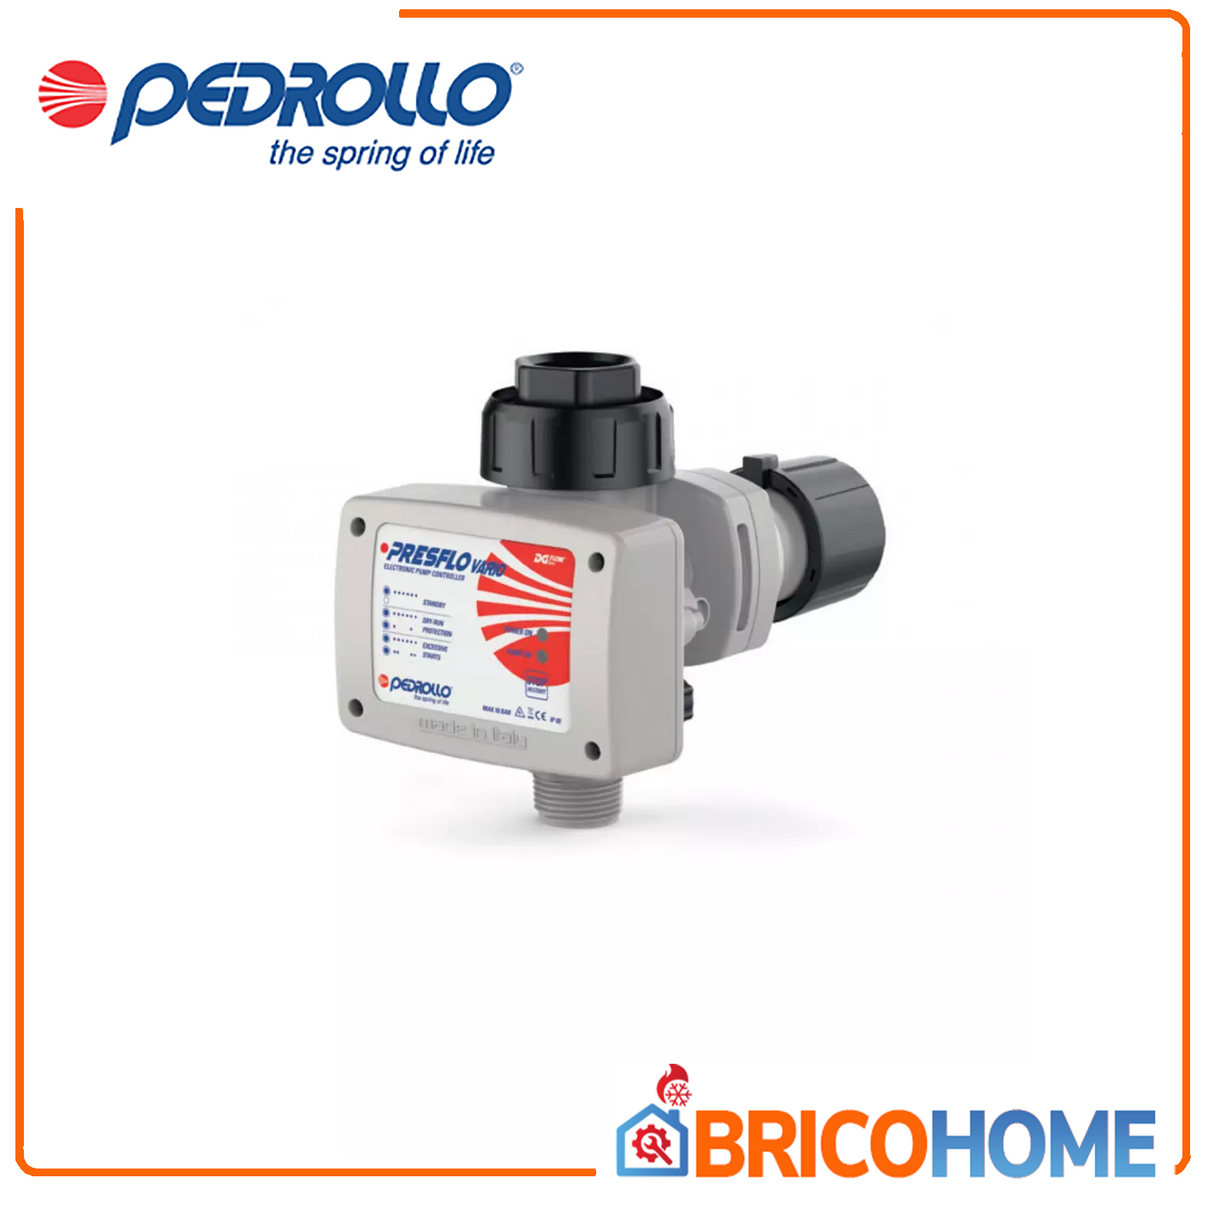 Presflo Vario electronic variable pressure regulator with pressure gauge